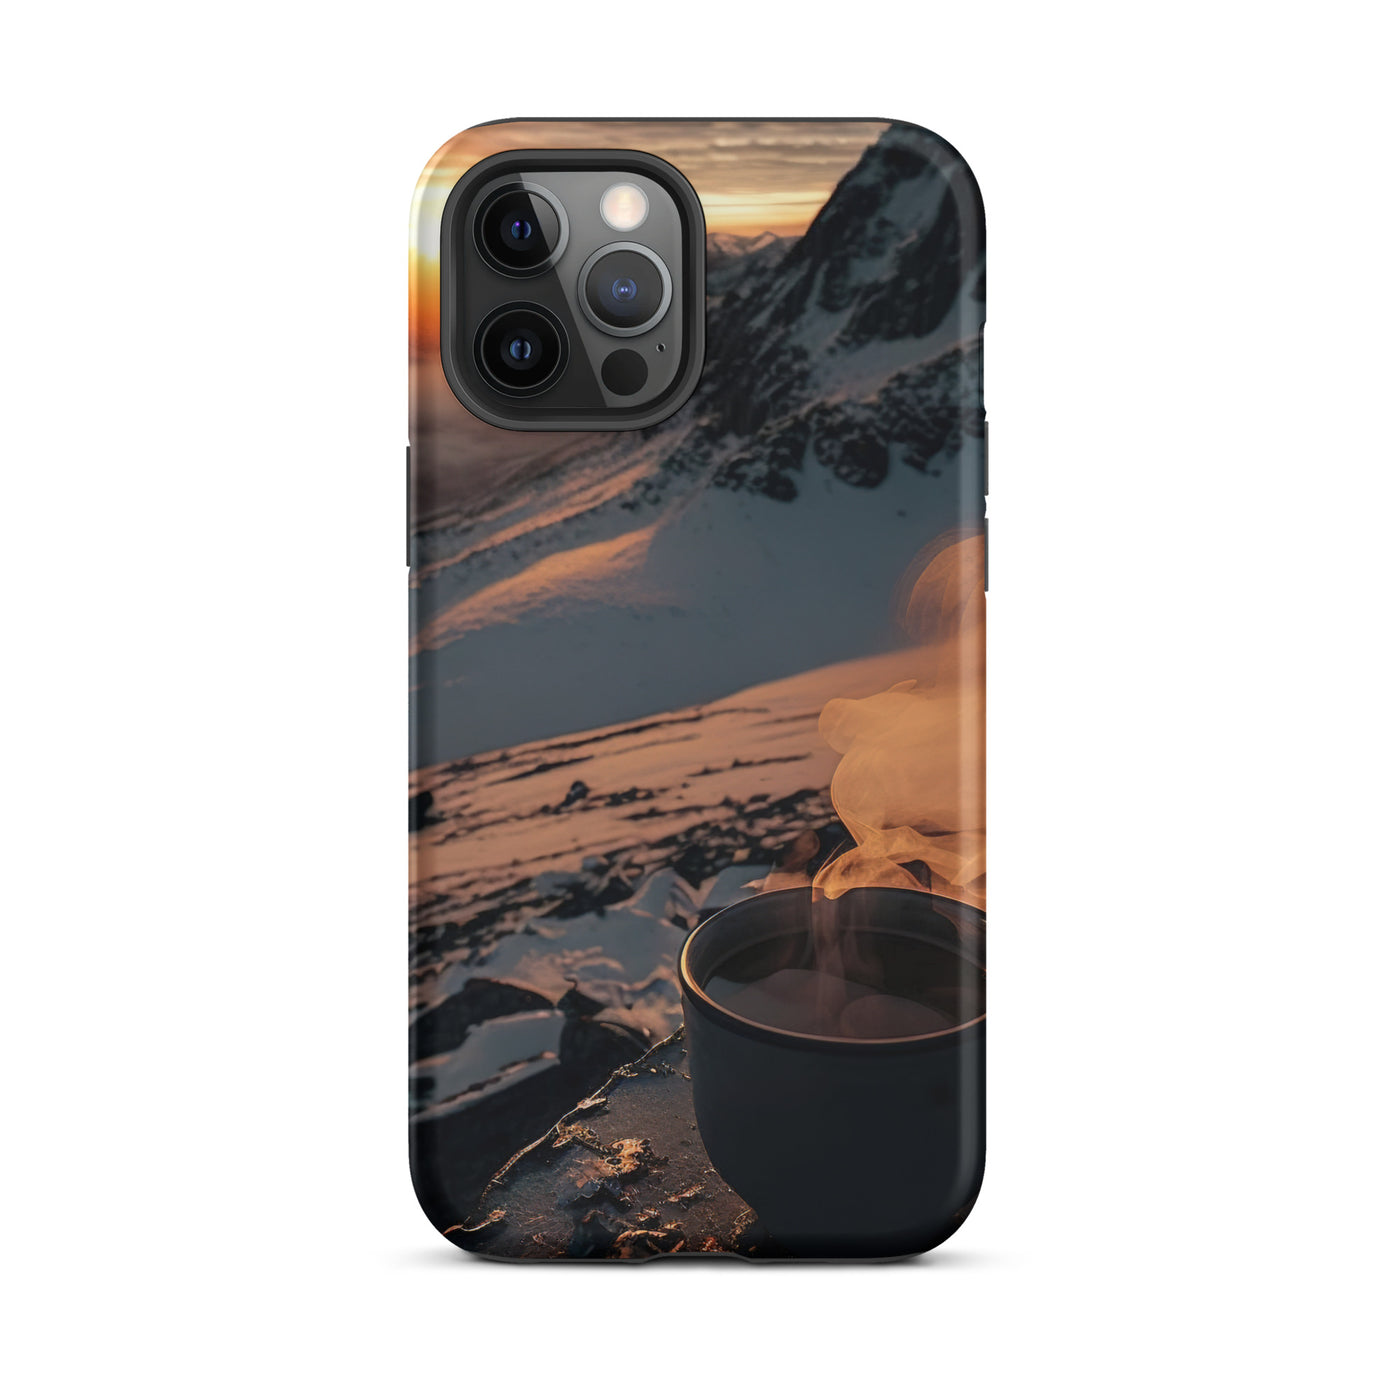 Heißer Kaffee auf einem schneebedeckten Berg - iPhone Schutzhülle (robust) berge xxx iPhone 12 Pro Max